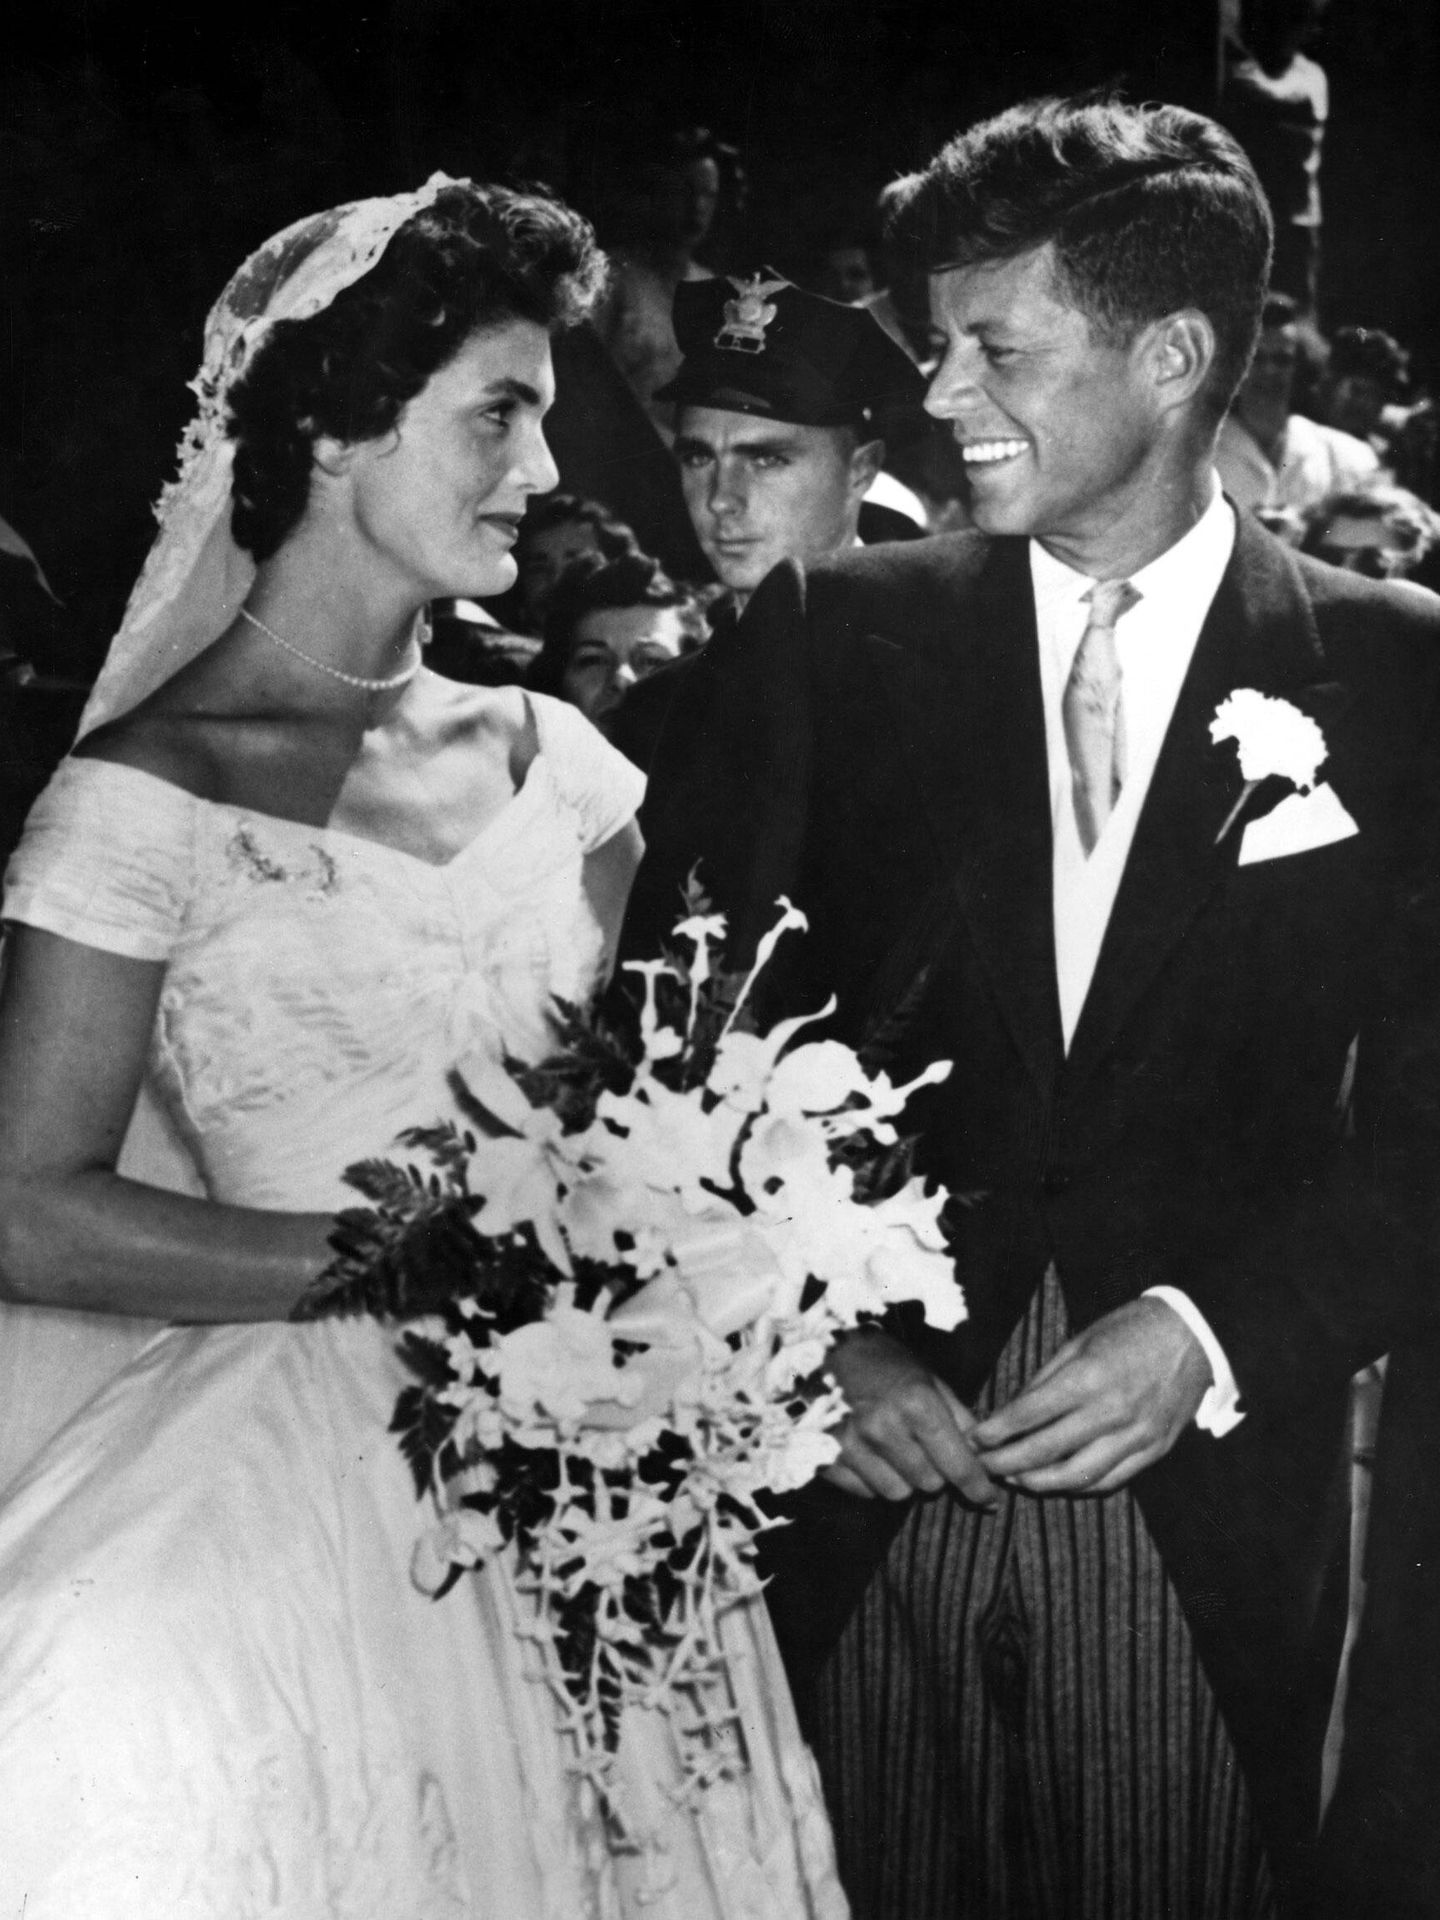 La boda de John y Jacqueline Kennedy se celebró el 12 de septiembre de 1953. (Cordon Press)